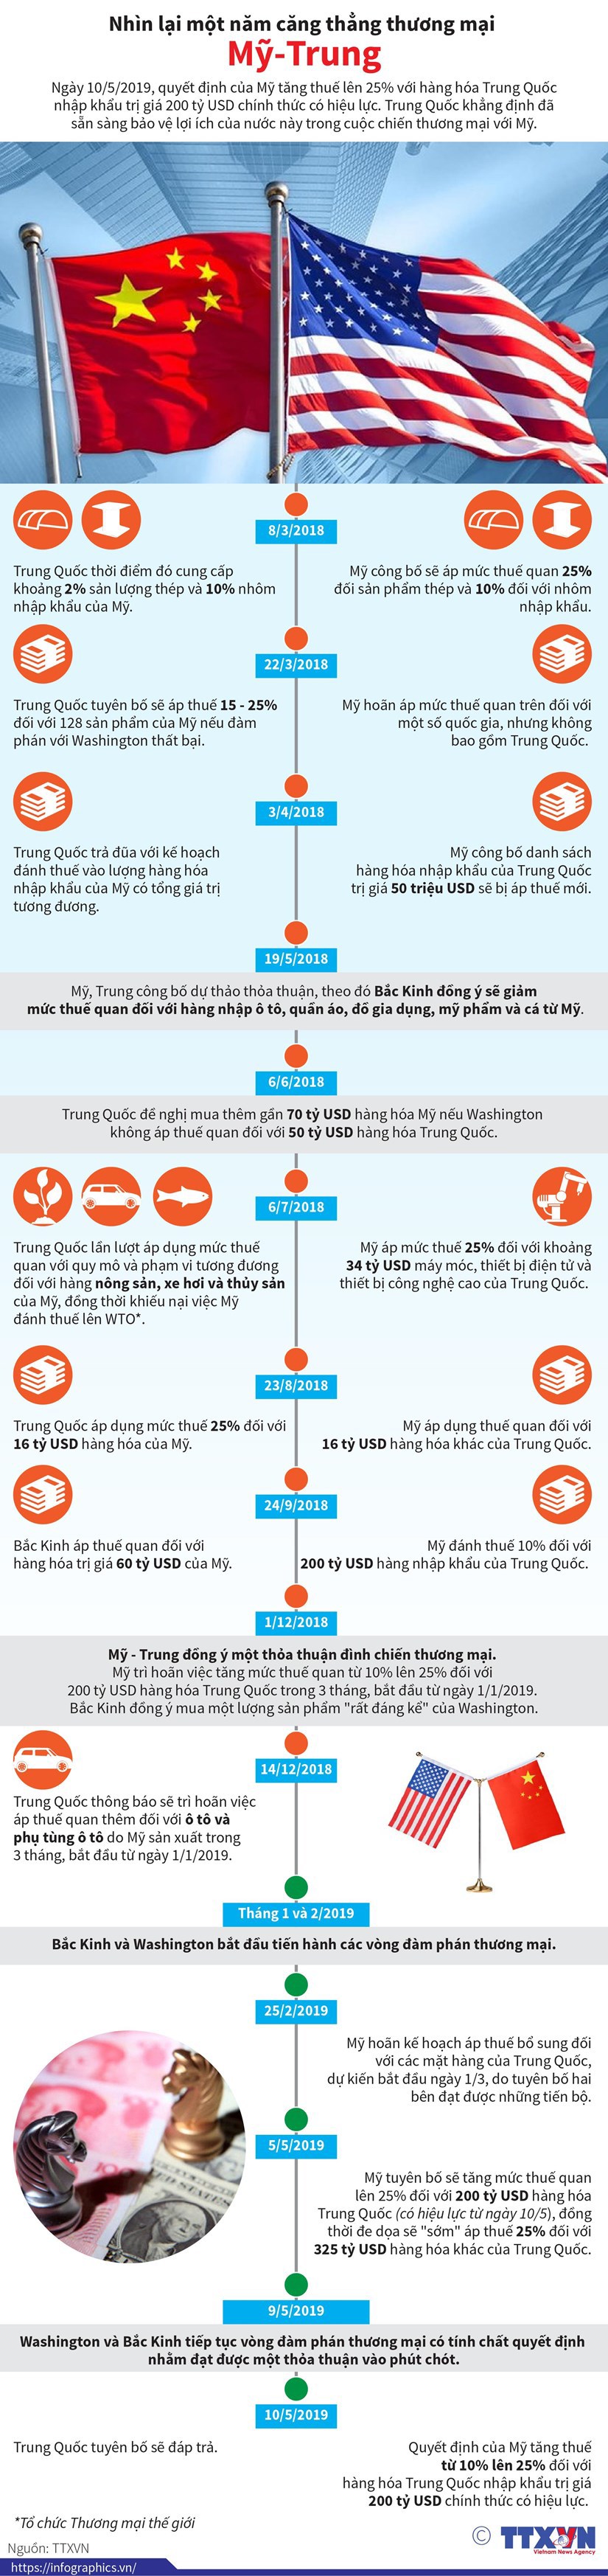 [Infographics] Nhìn lại một năm căng thẳng thương mại Mỹ-Trung - Ảnh 1